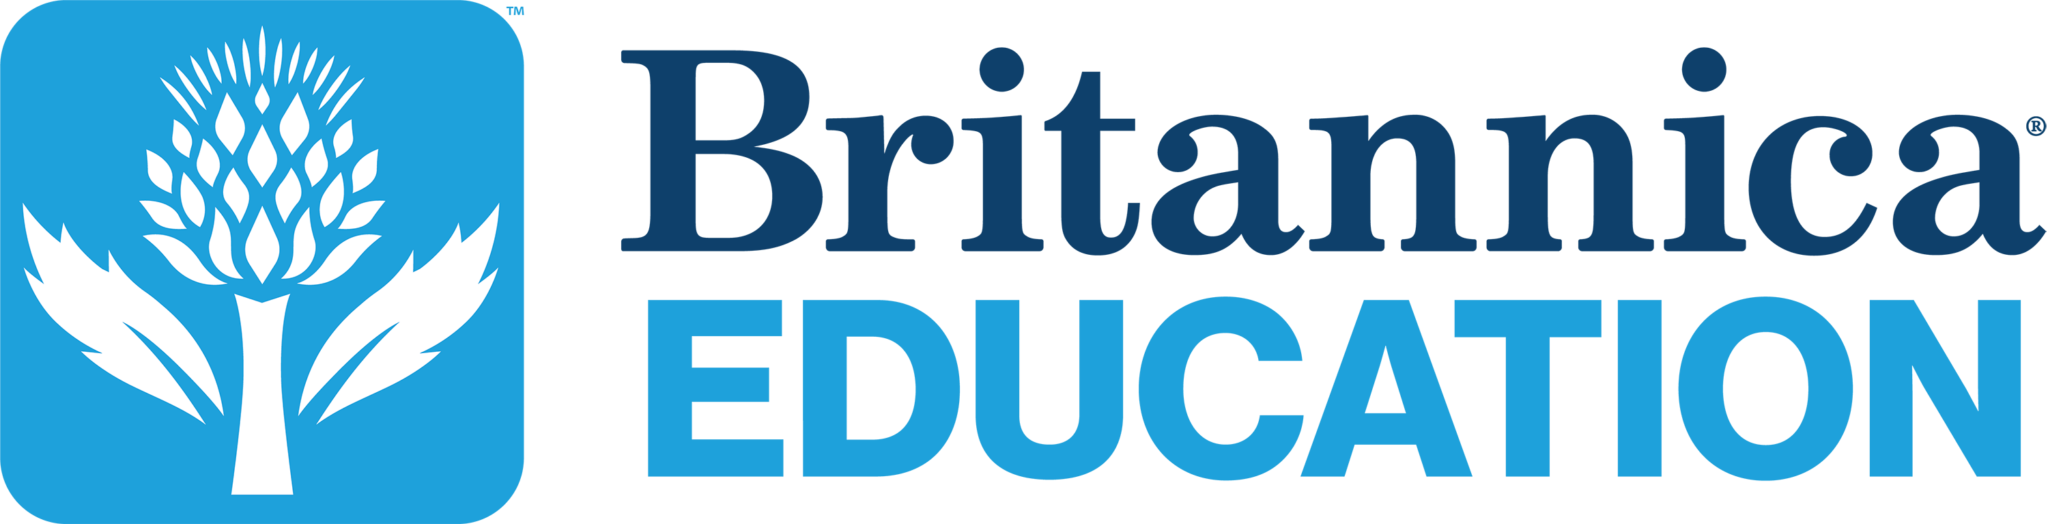 Britannica-Education-Logo_Full-Color_small-2048x524